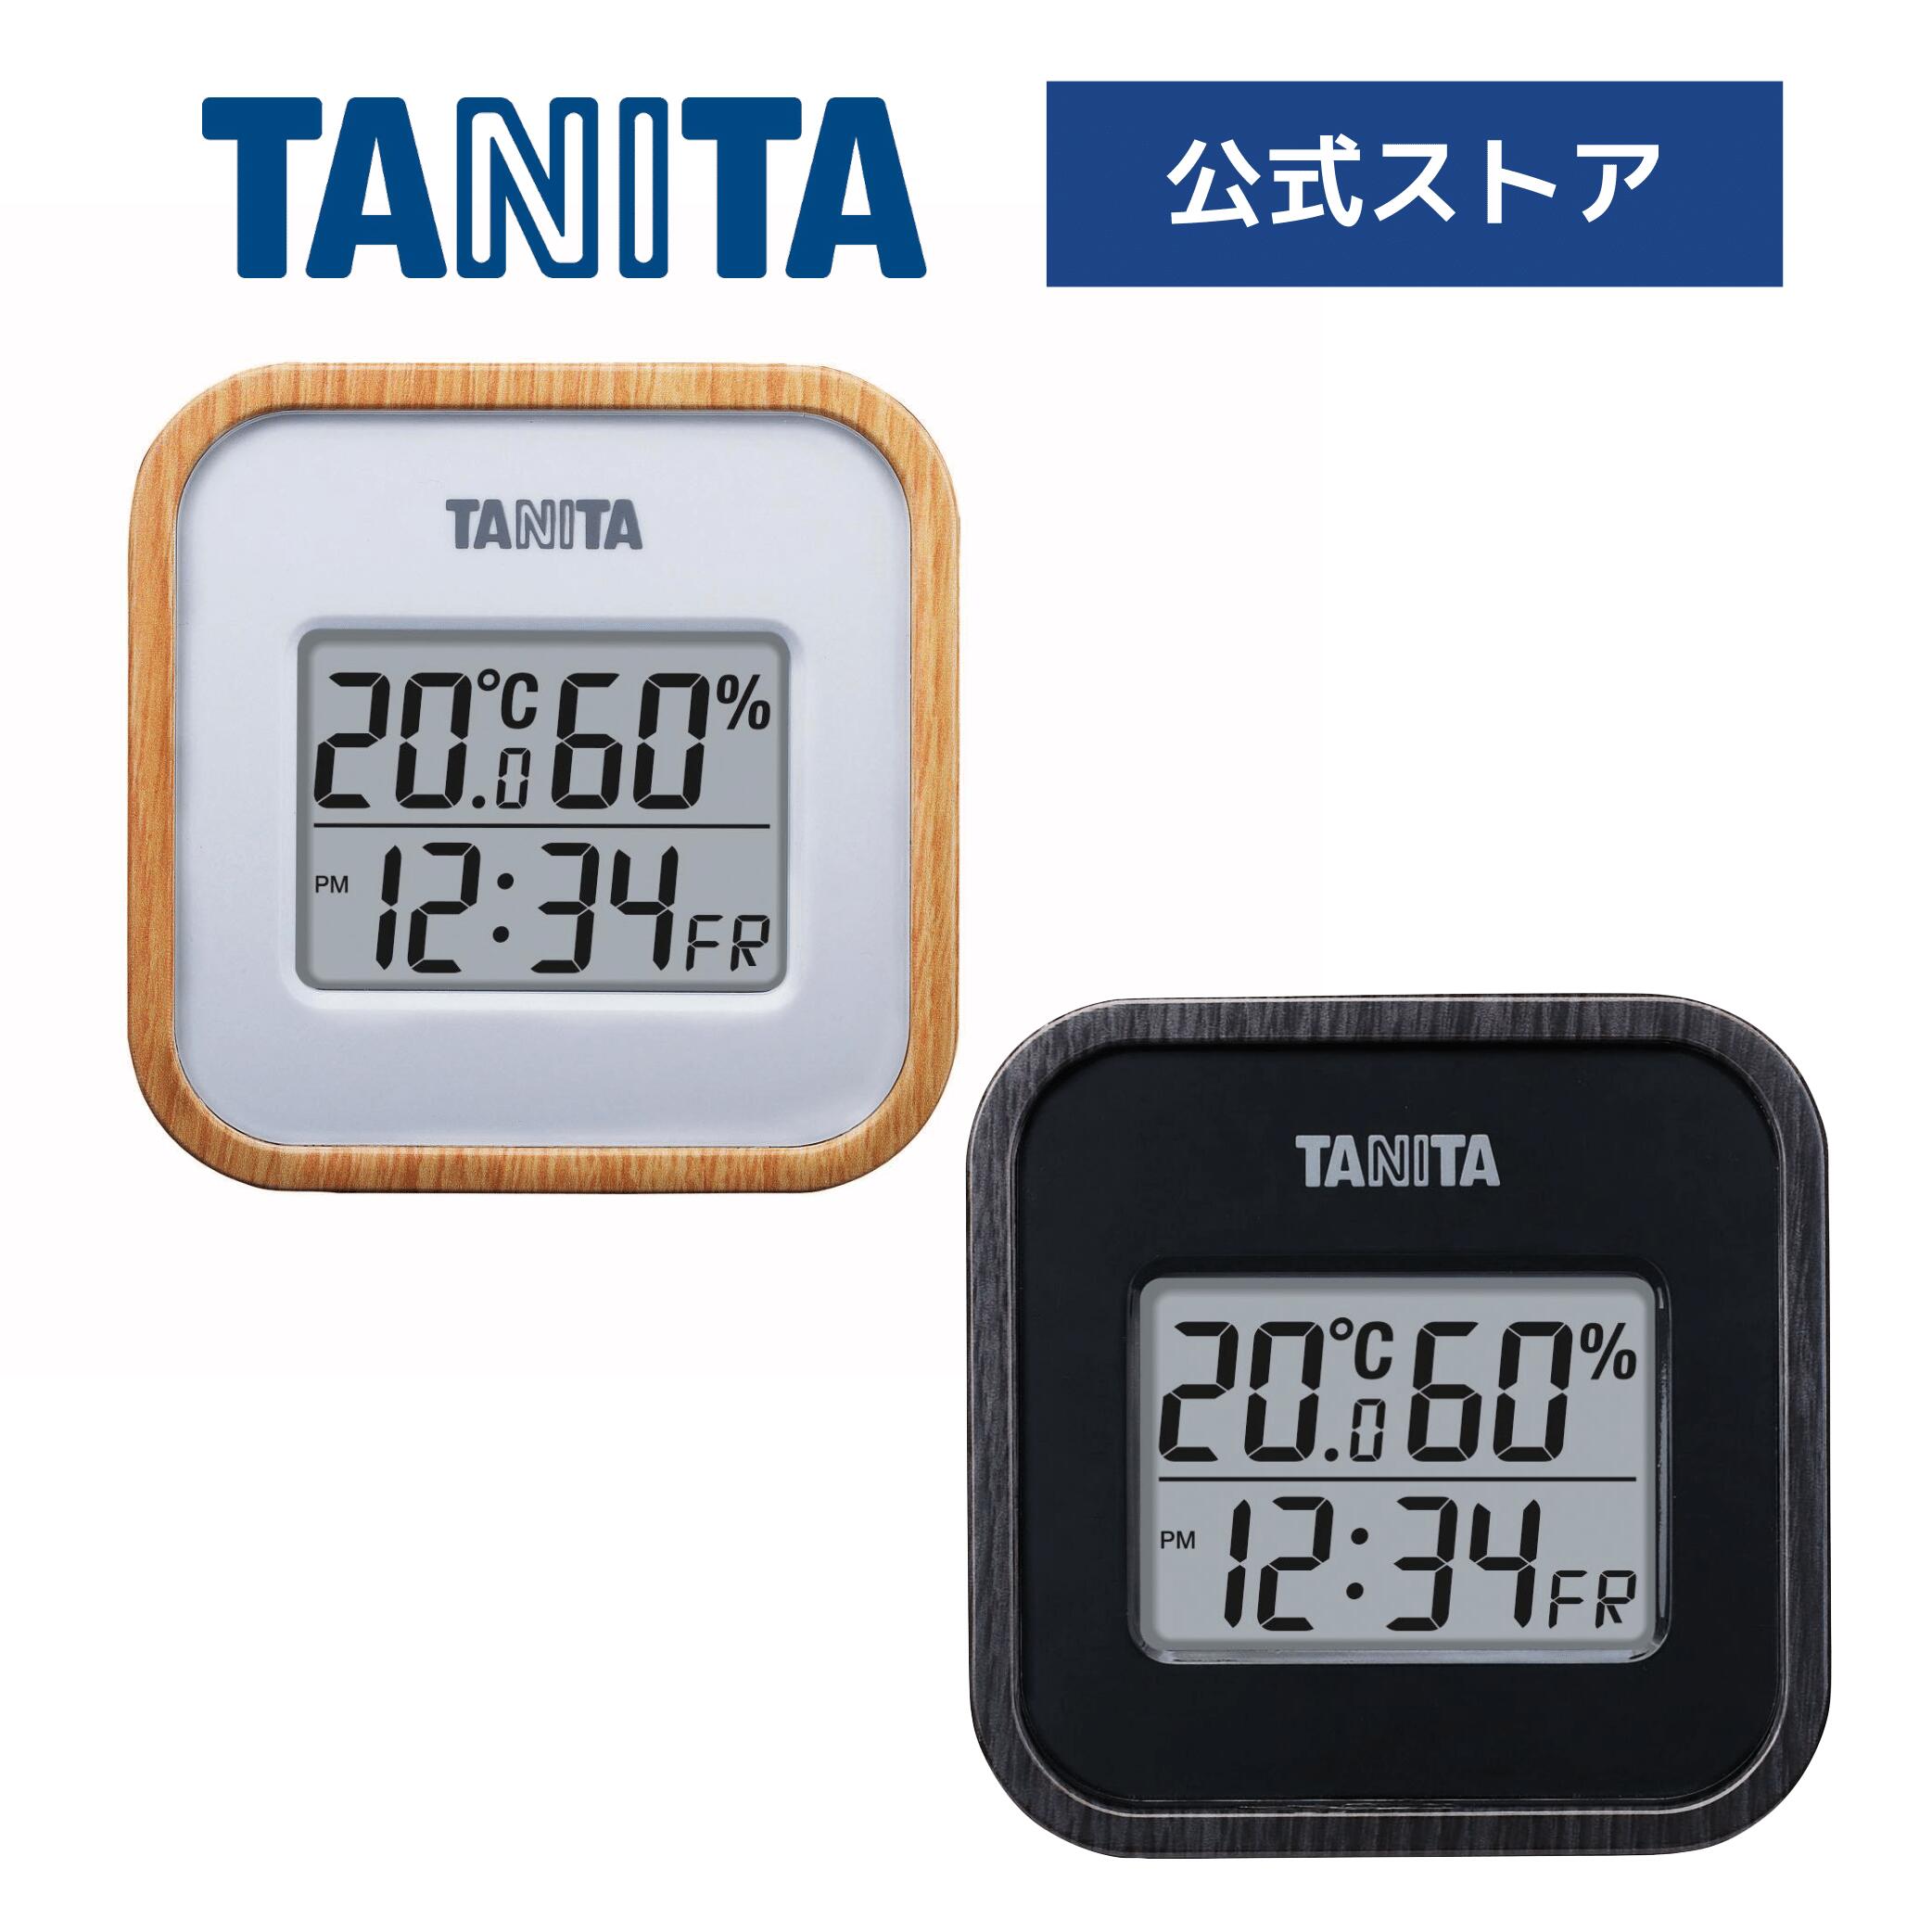 タニタ デジタル温湿度計 TT-571 ナチュラル